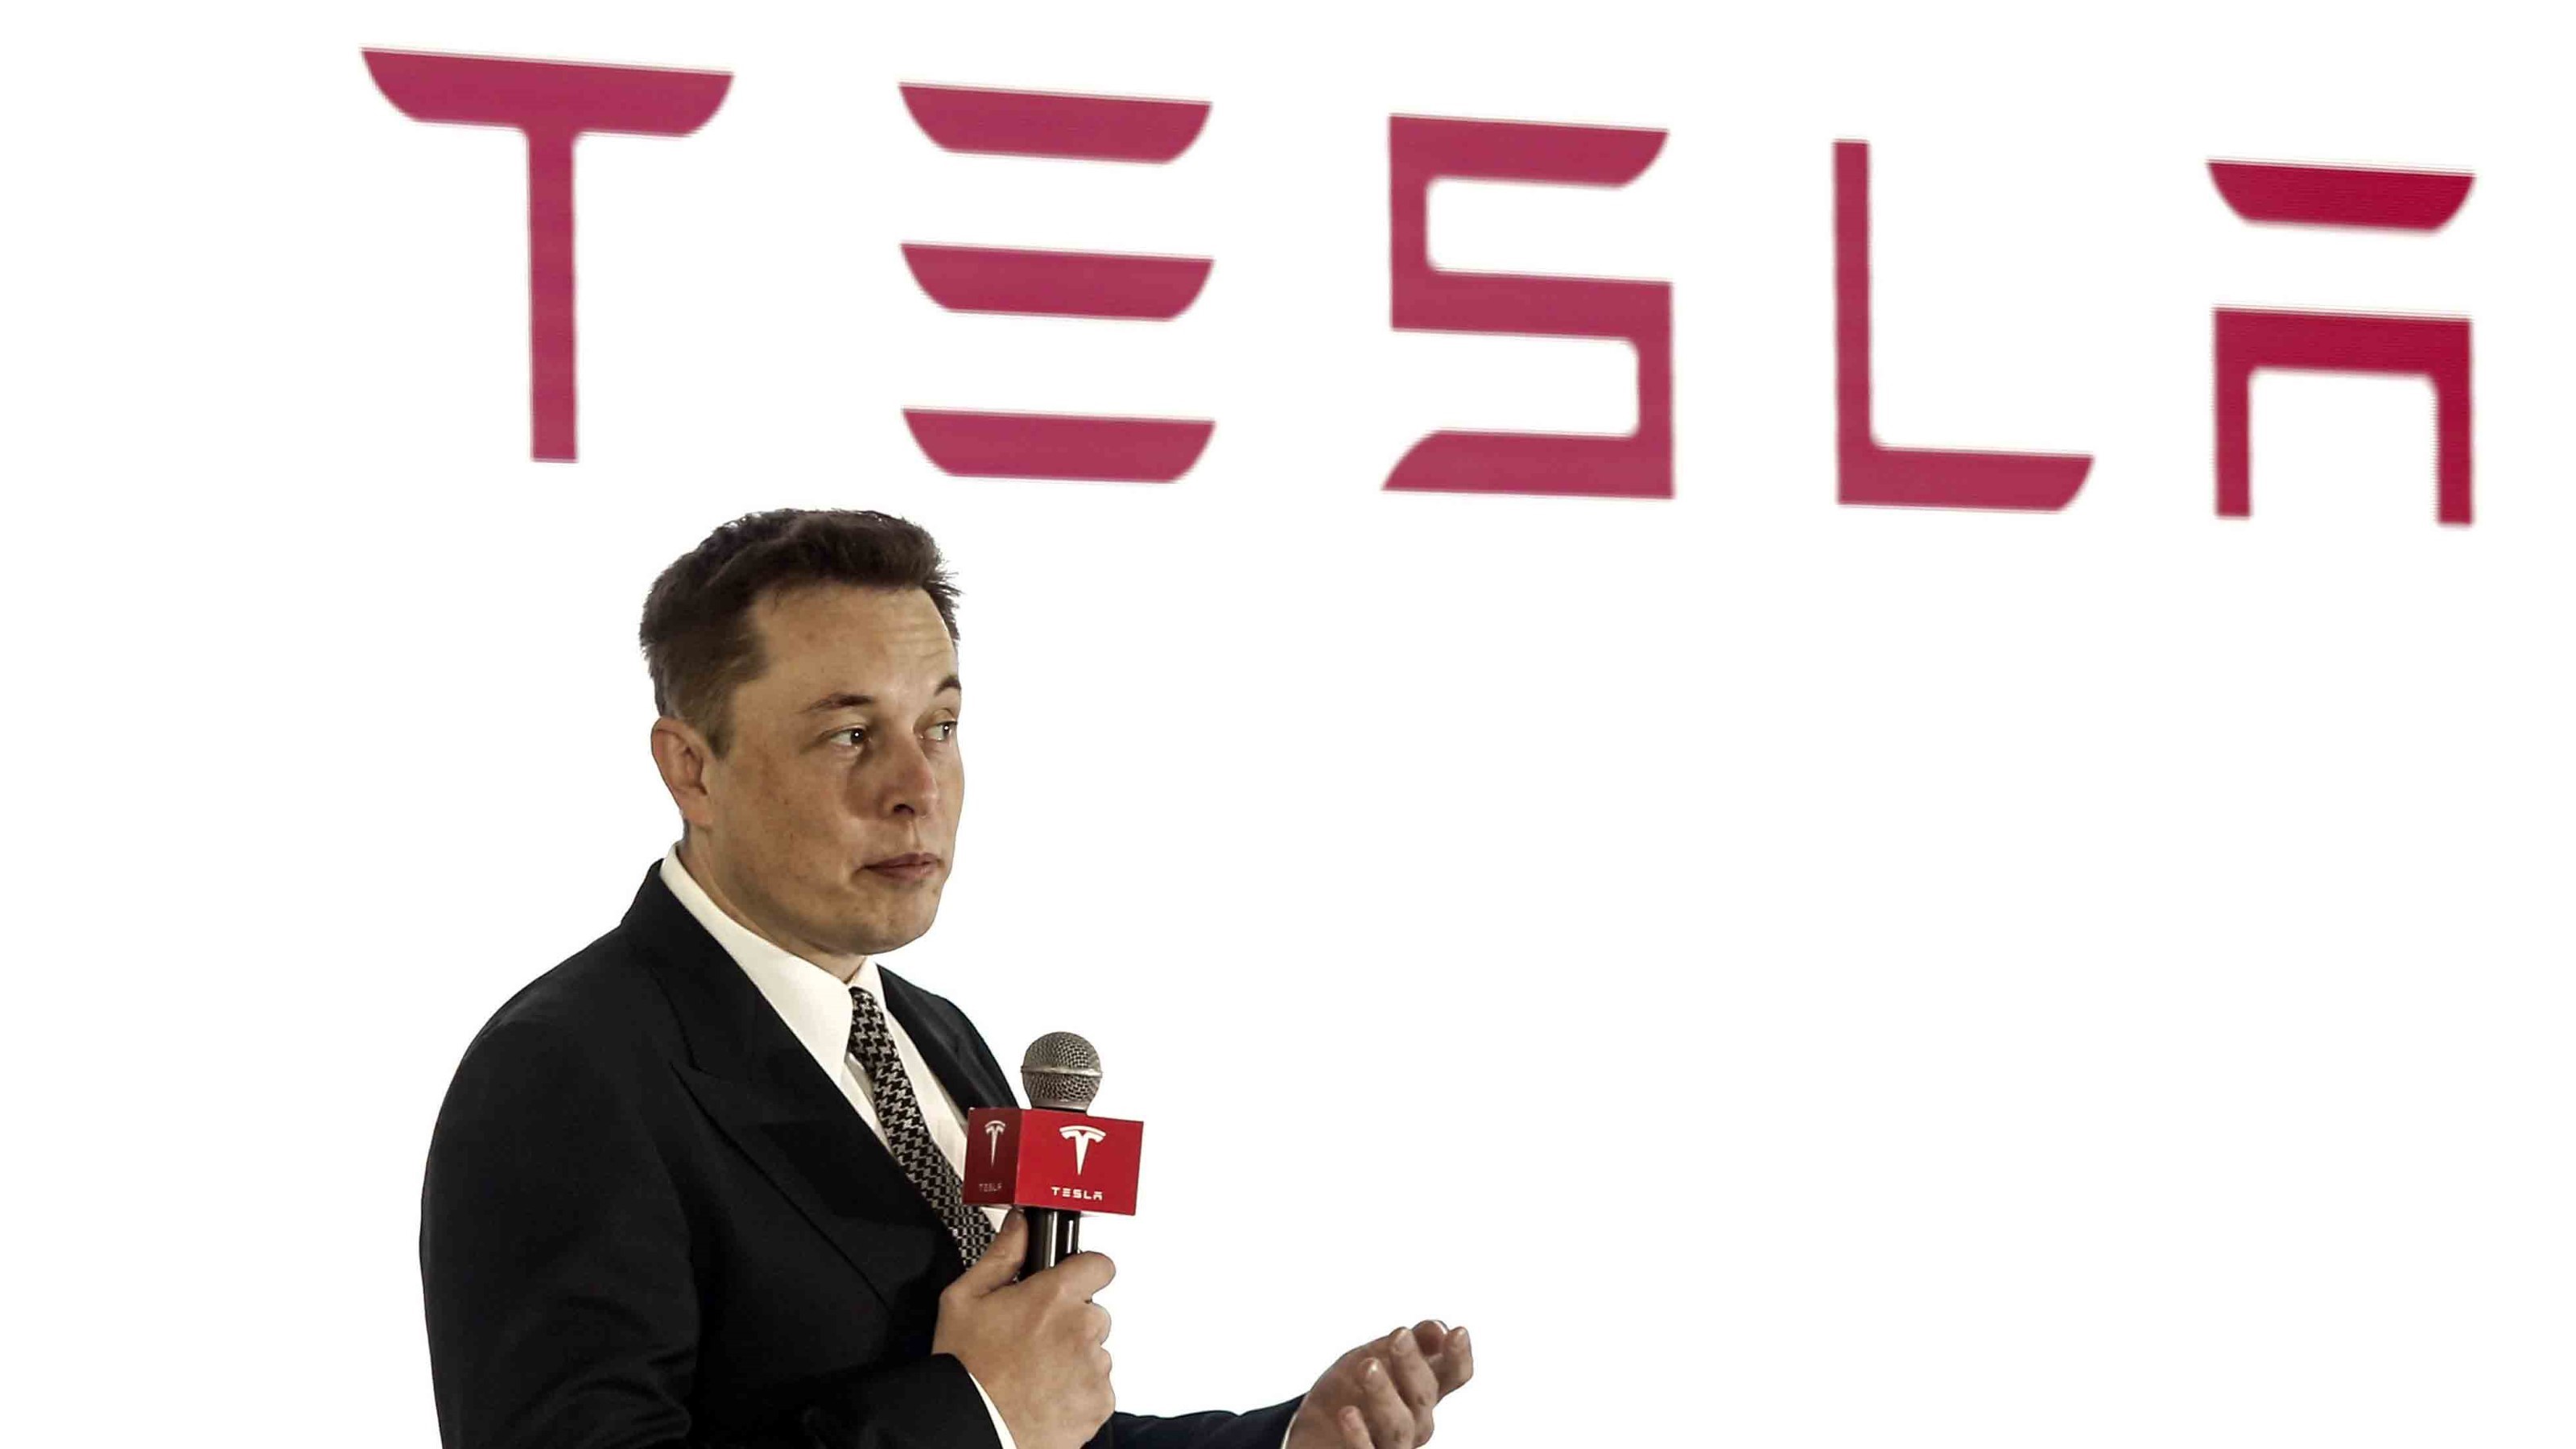 Στη Γερμανία για την πρόσληψη μηχανικών “αστέρια” Elon Musk